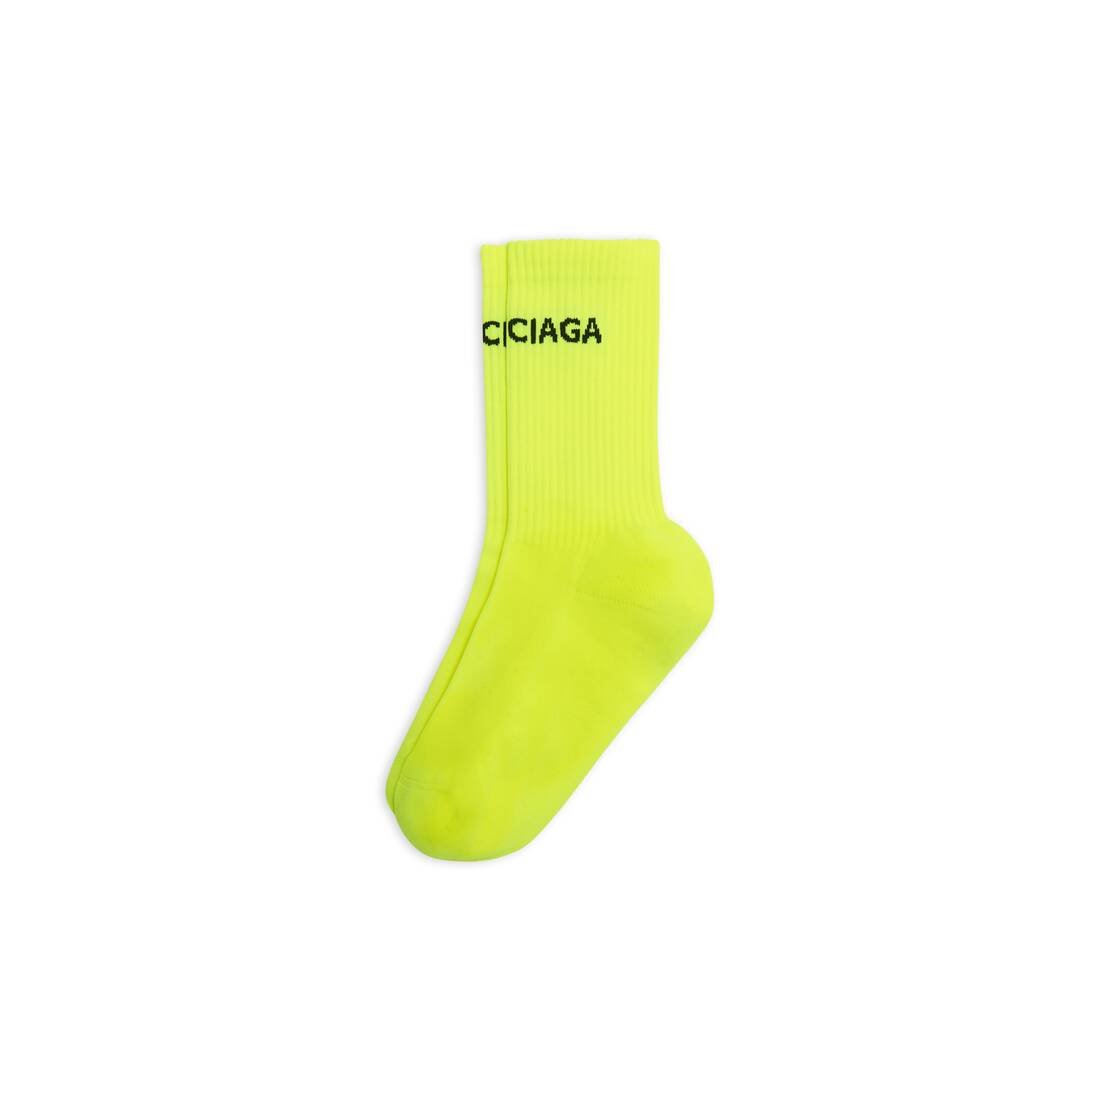 Men's Balenciaga Socks in Yellow Fluo/silver